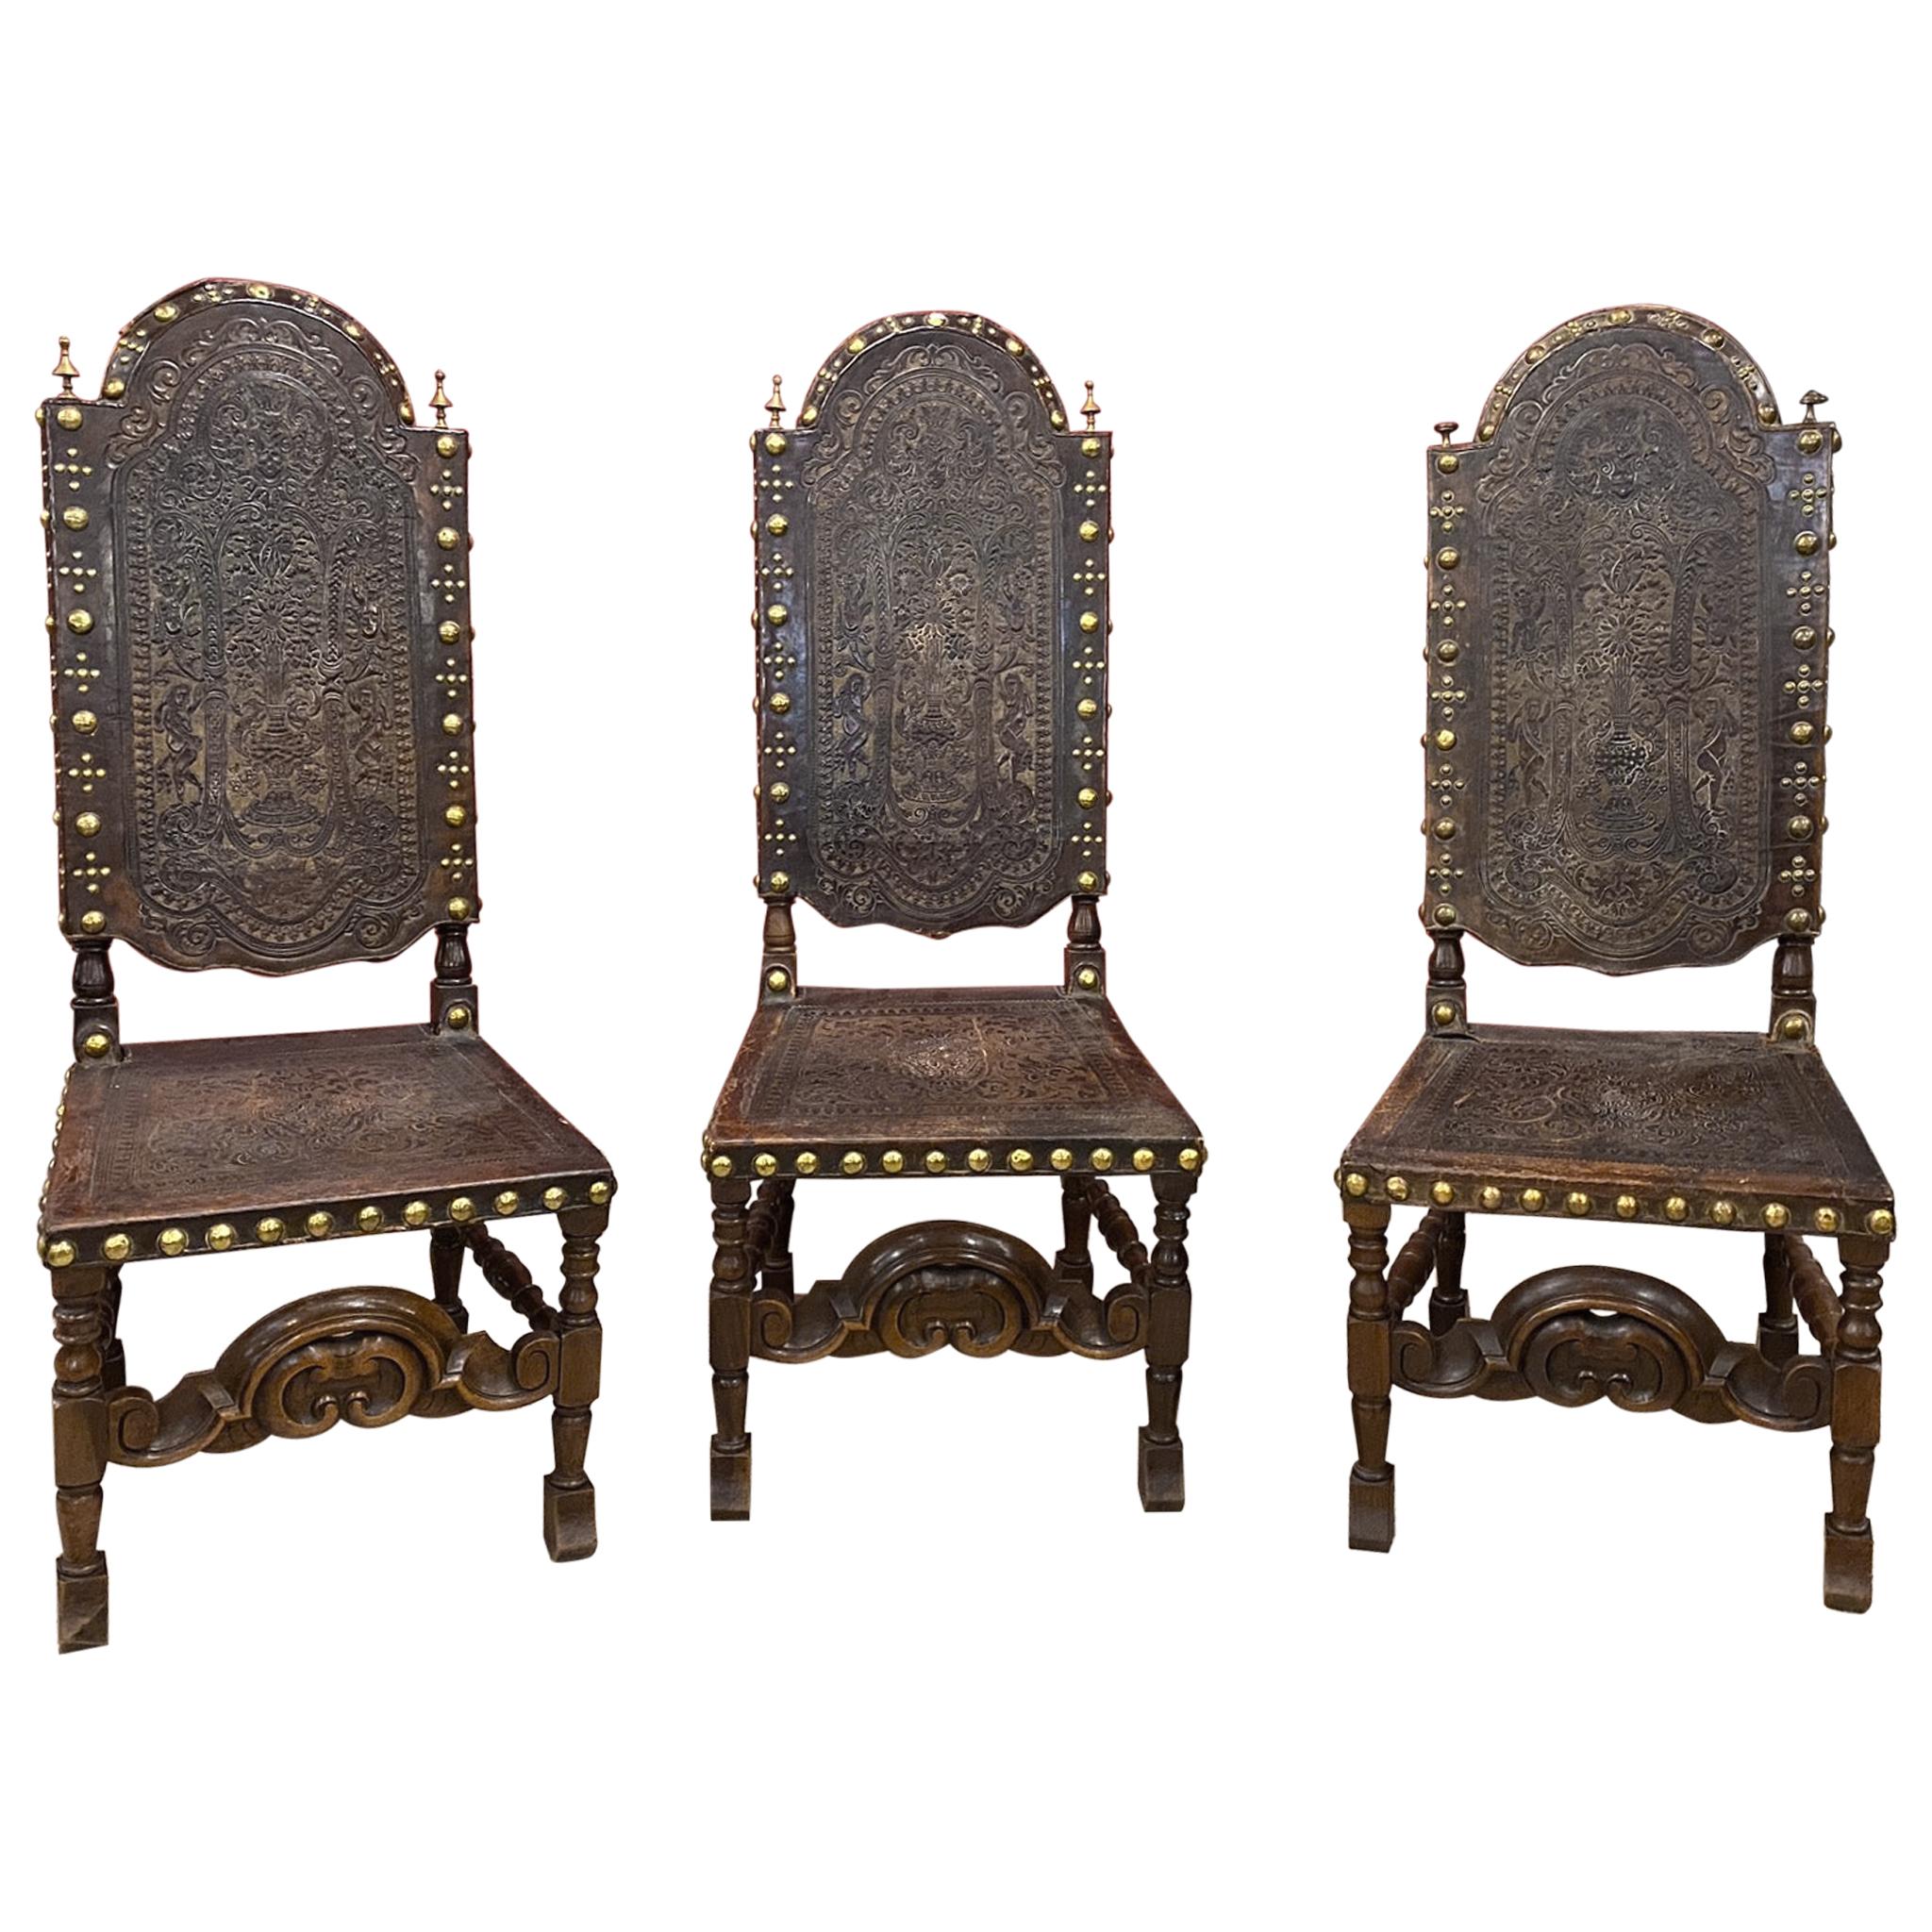 3 Stühle mit hoher Rückenlehne, Cordoba-Lederbesatz mit amerikanischem Ureinwohnerdekor, Spanien